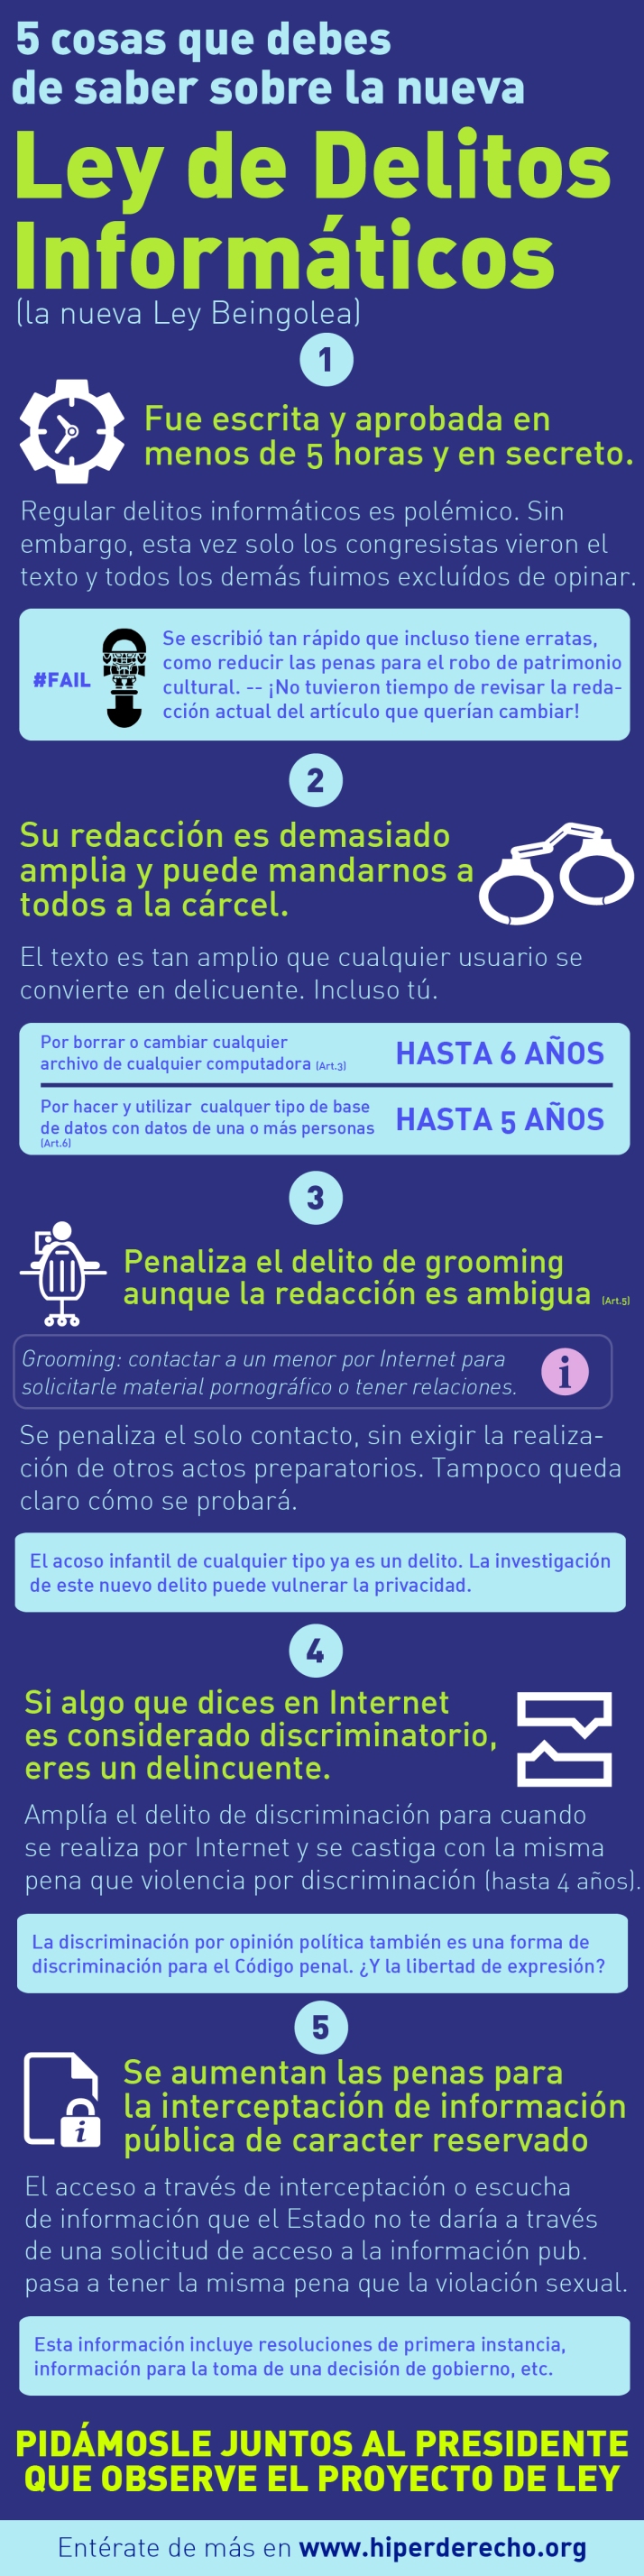 Ley de delitos informáticos en Perú